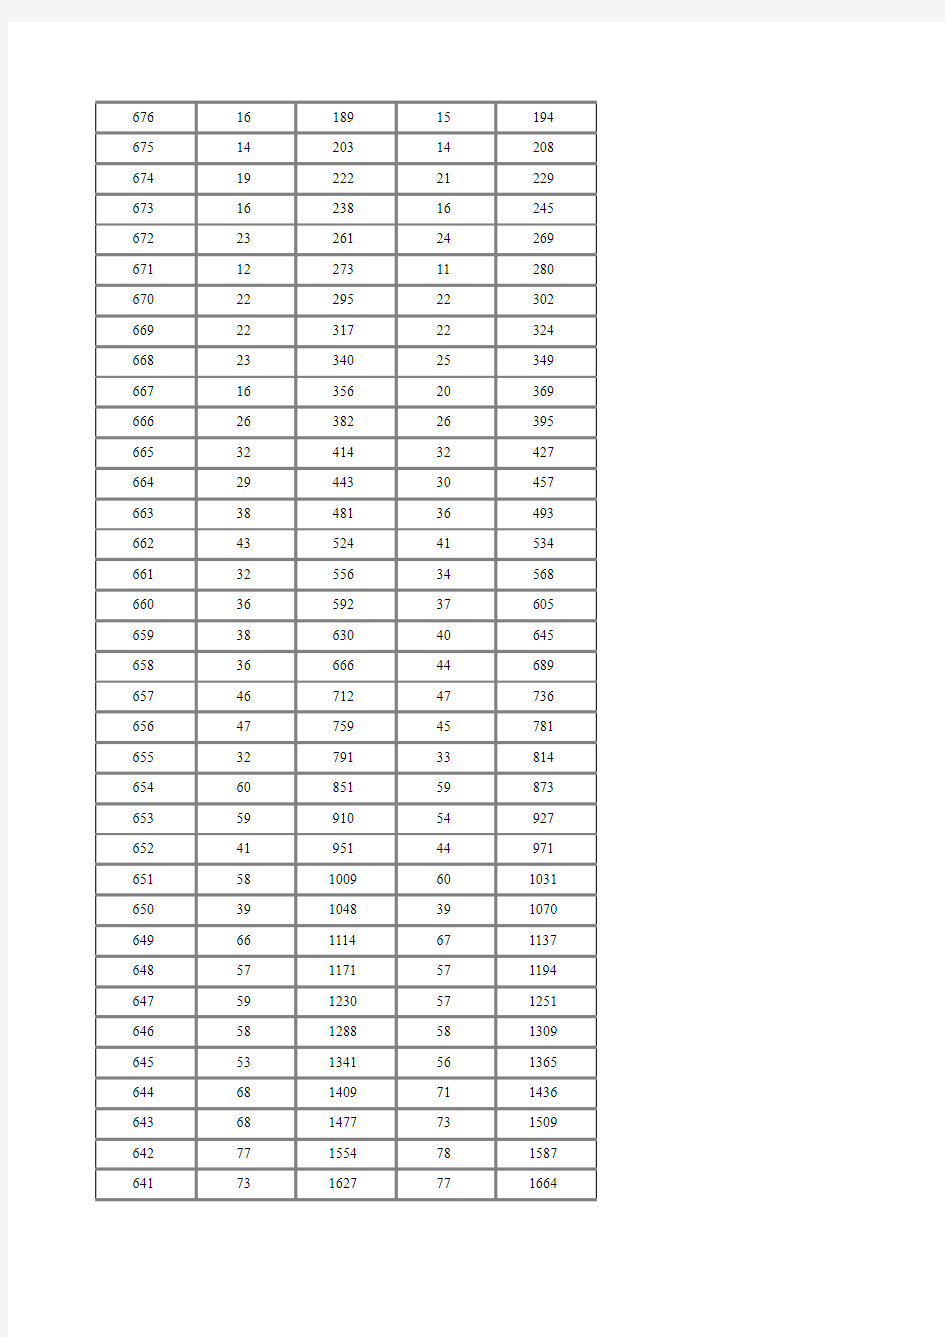 湖南省2015年普通高考(理科)一档一分一段统计表